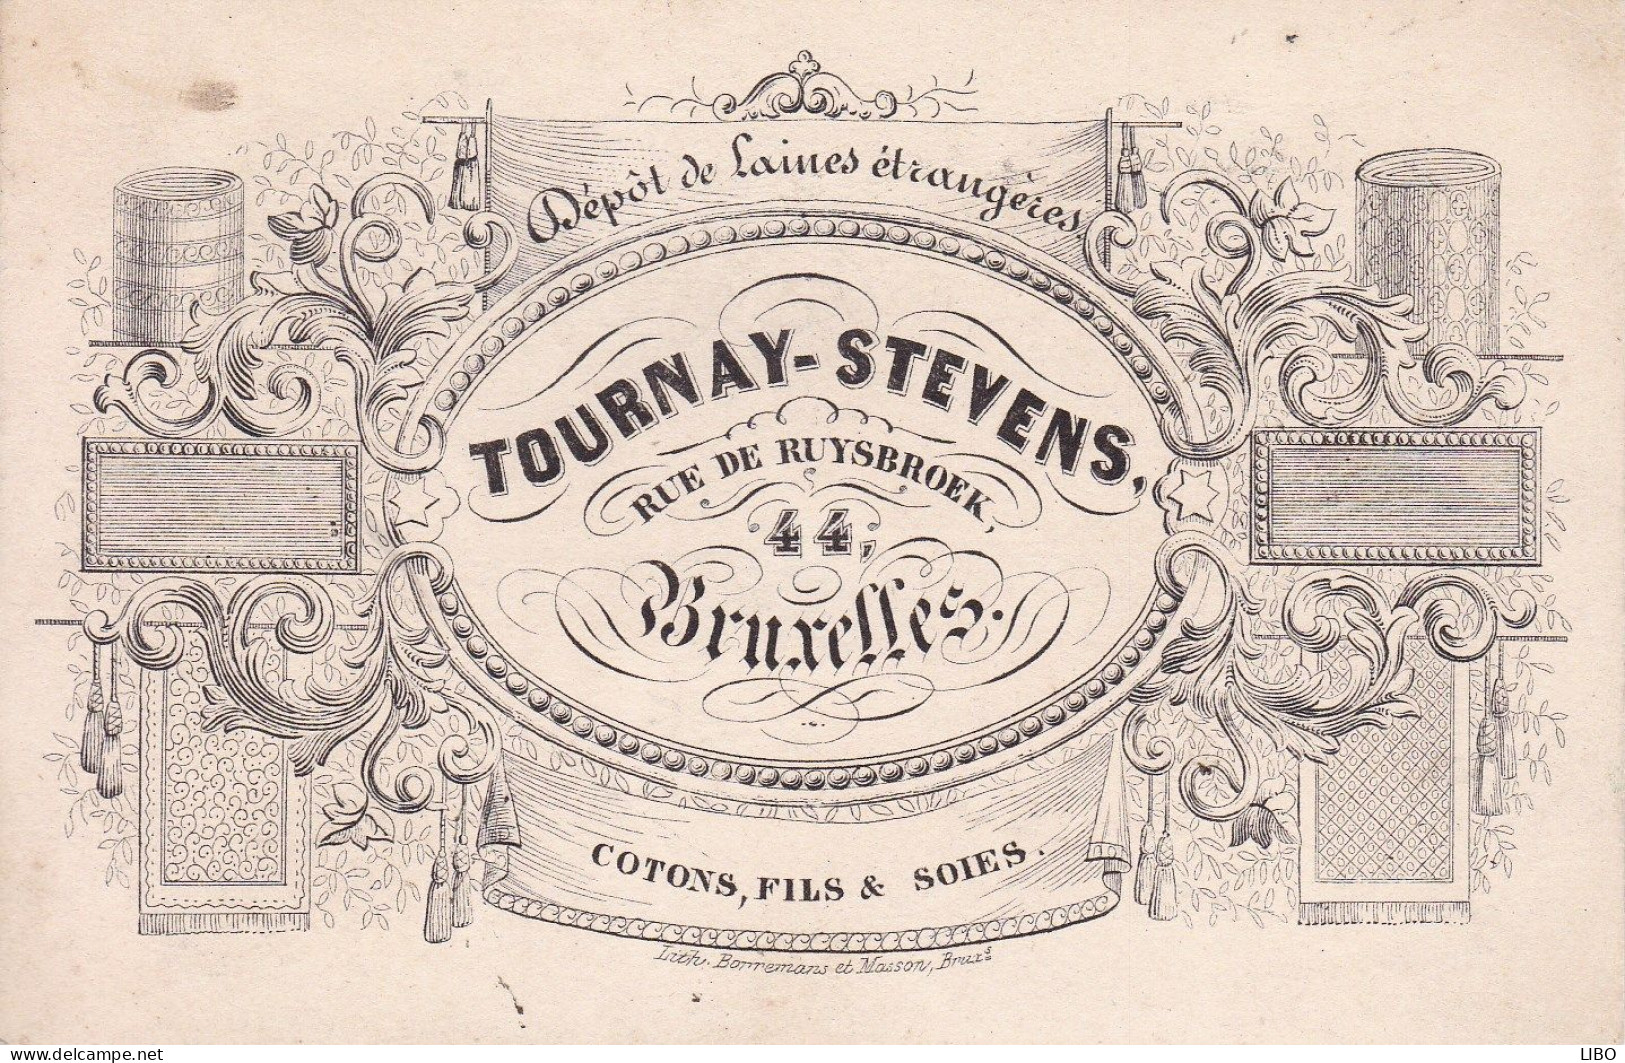 BRUXELLES Laines TOURNAY-STEVENS Rue De Ruysbroek Cotons Fils Et Soies Carte De Visite Format Carte Postale C. 1860 - Cartes De Visite